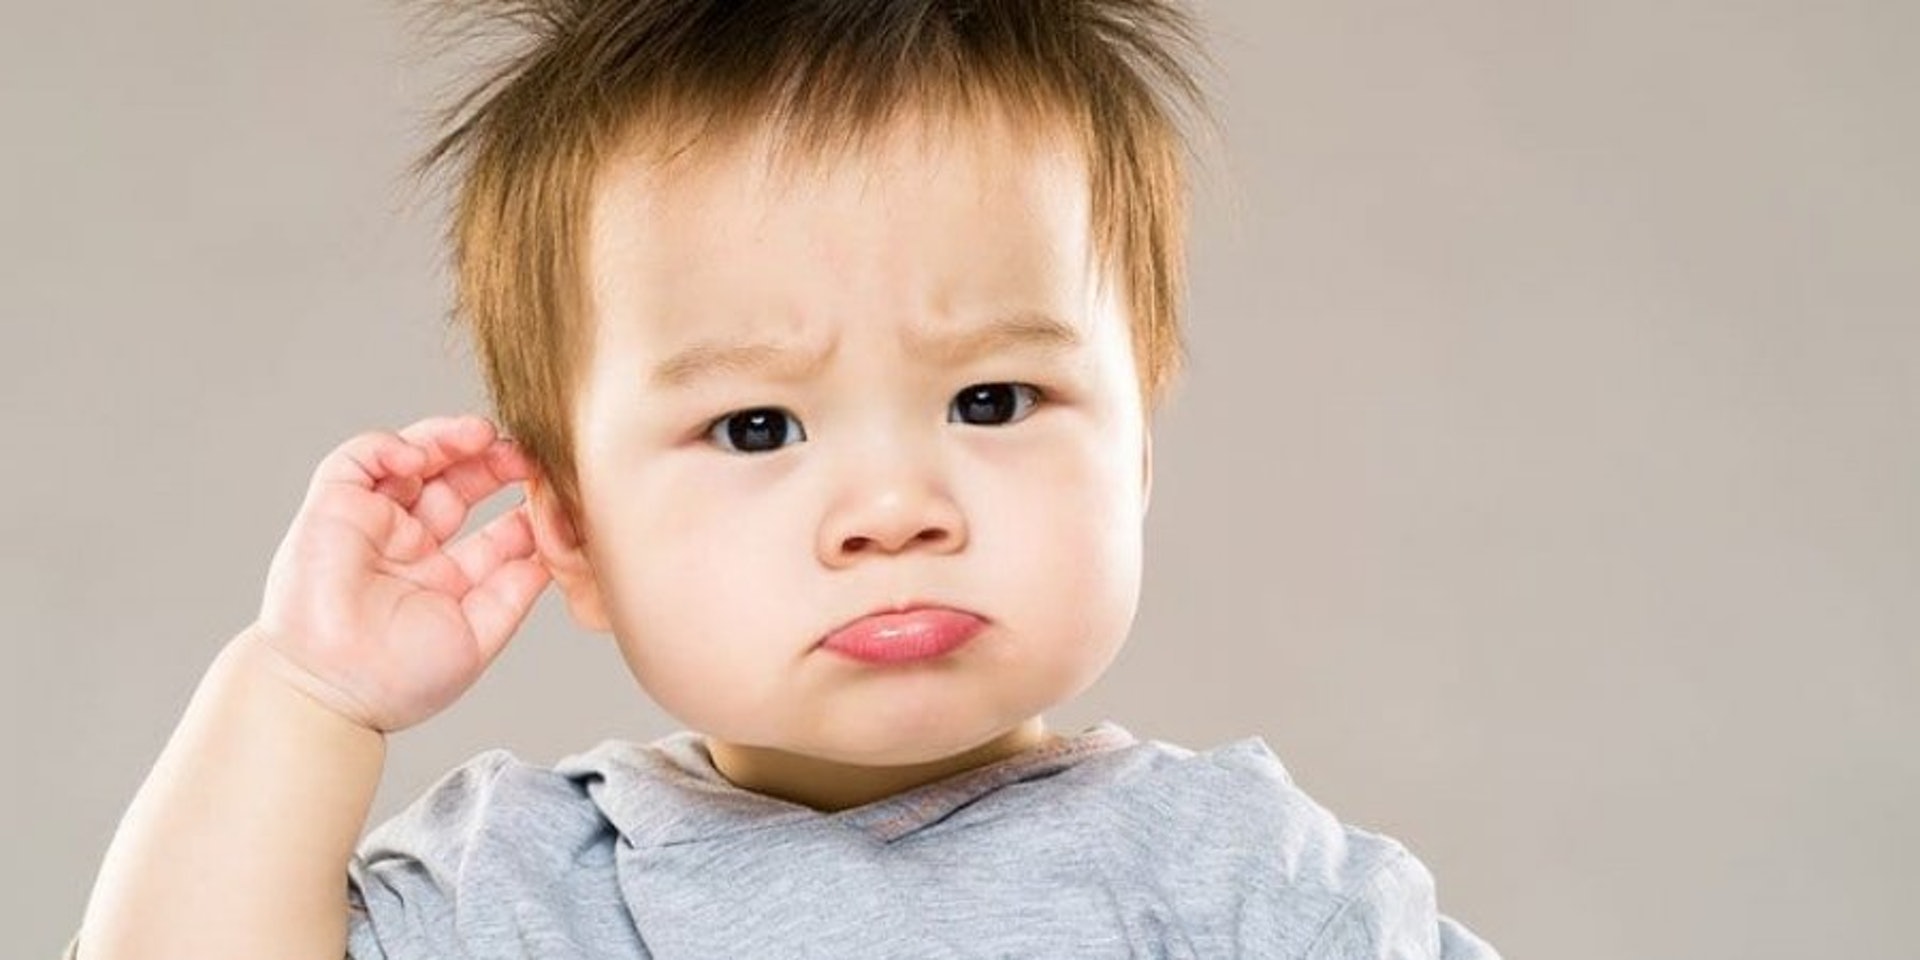 家長可以留意孩子是否會不停抓或挖自己的耳朵、經常無反應、食慾或活動力下降等，這些情況可能反映耳內痕癢或疼痛、聽覺受影響等中耳炎症狀。（圖片：healthymatters）